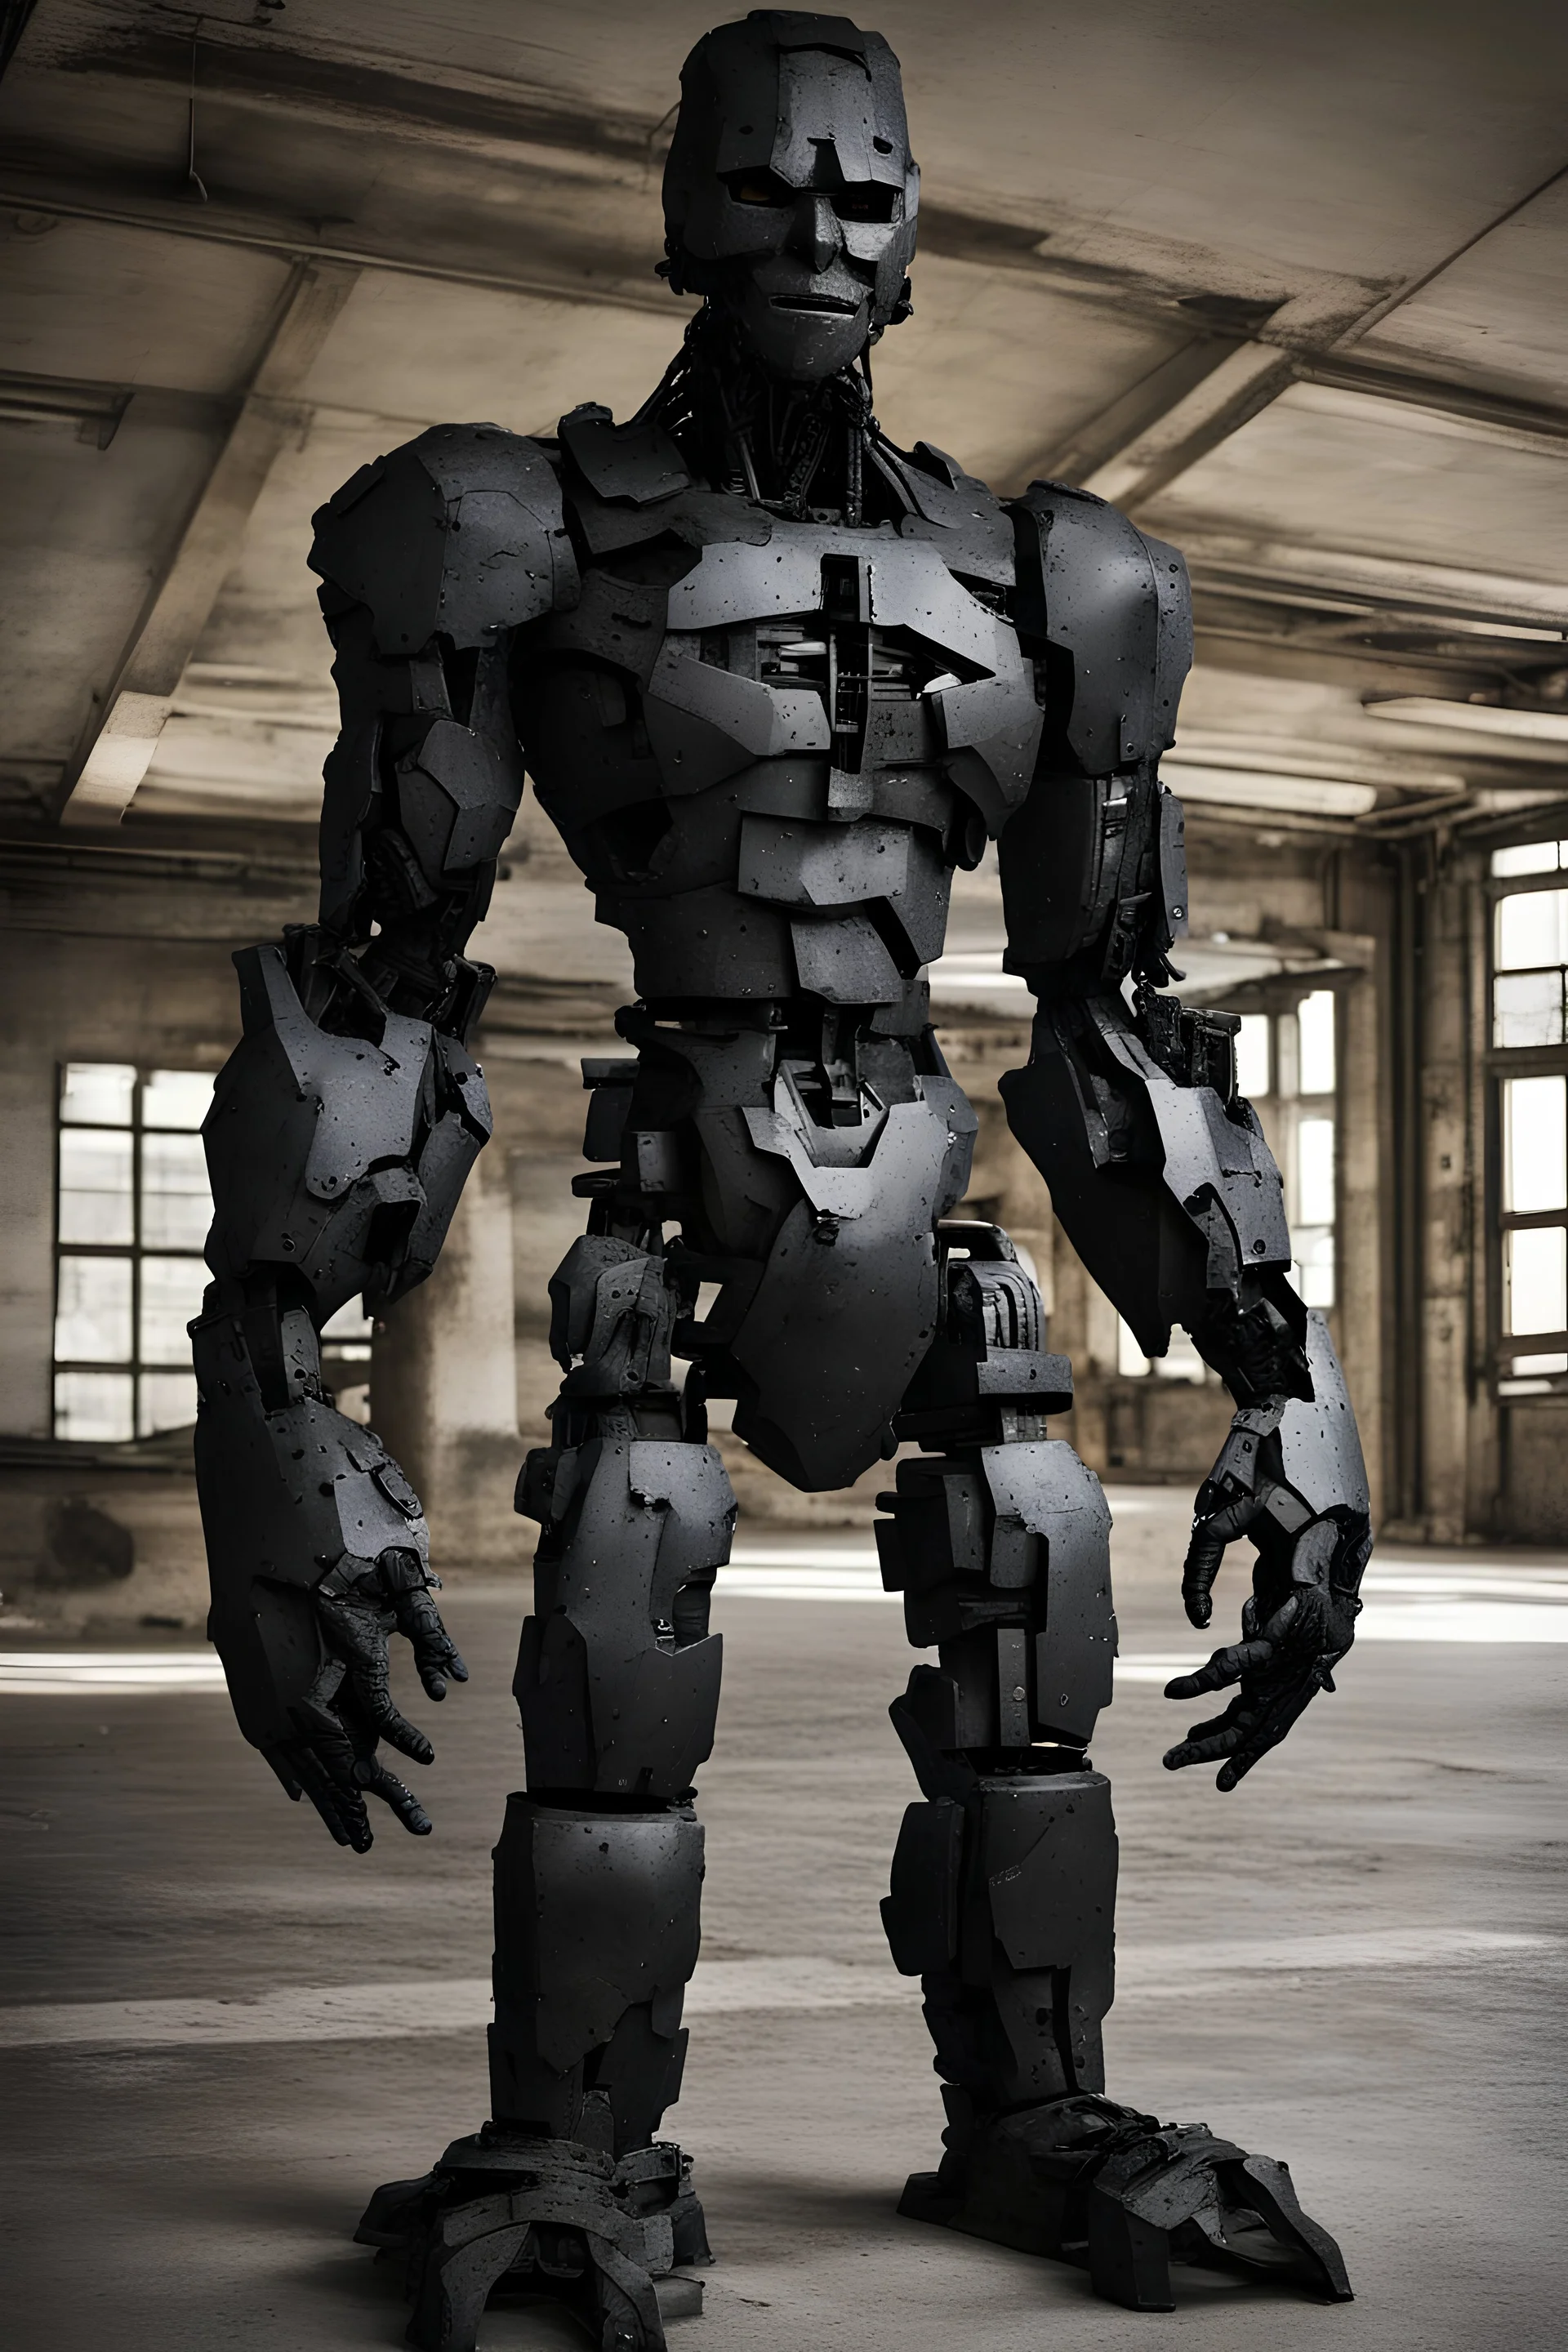 humanoid golem made of black steel, looks like a man